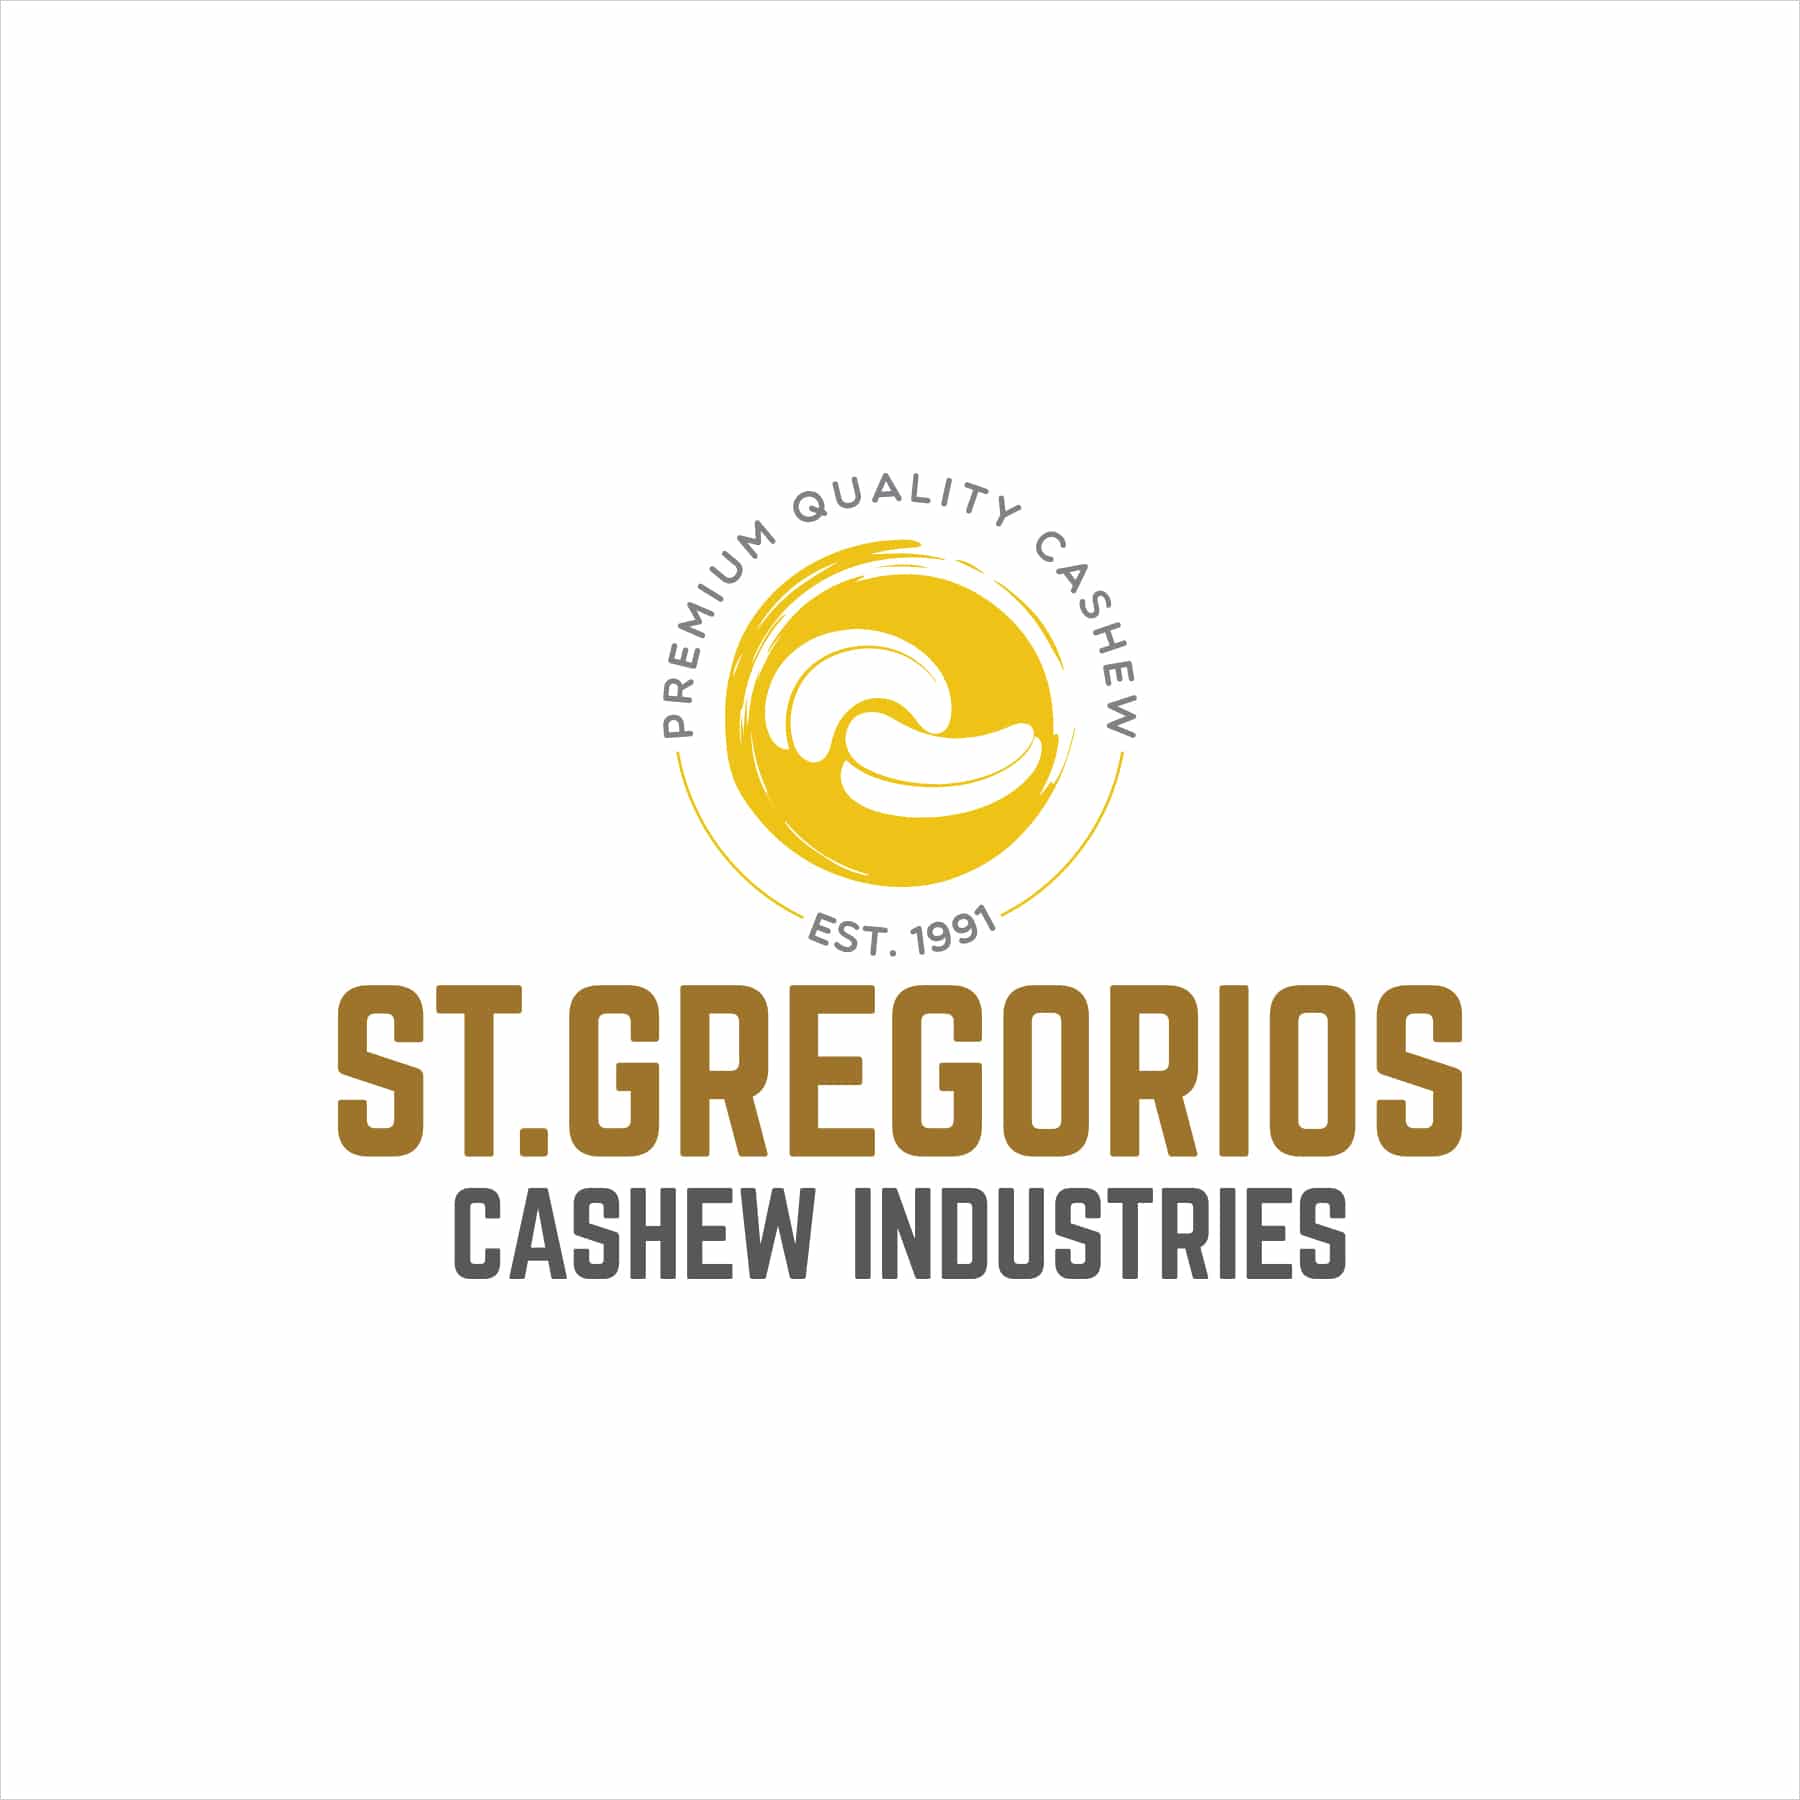 St. Gregorios Cashew Industries